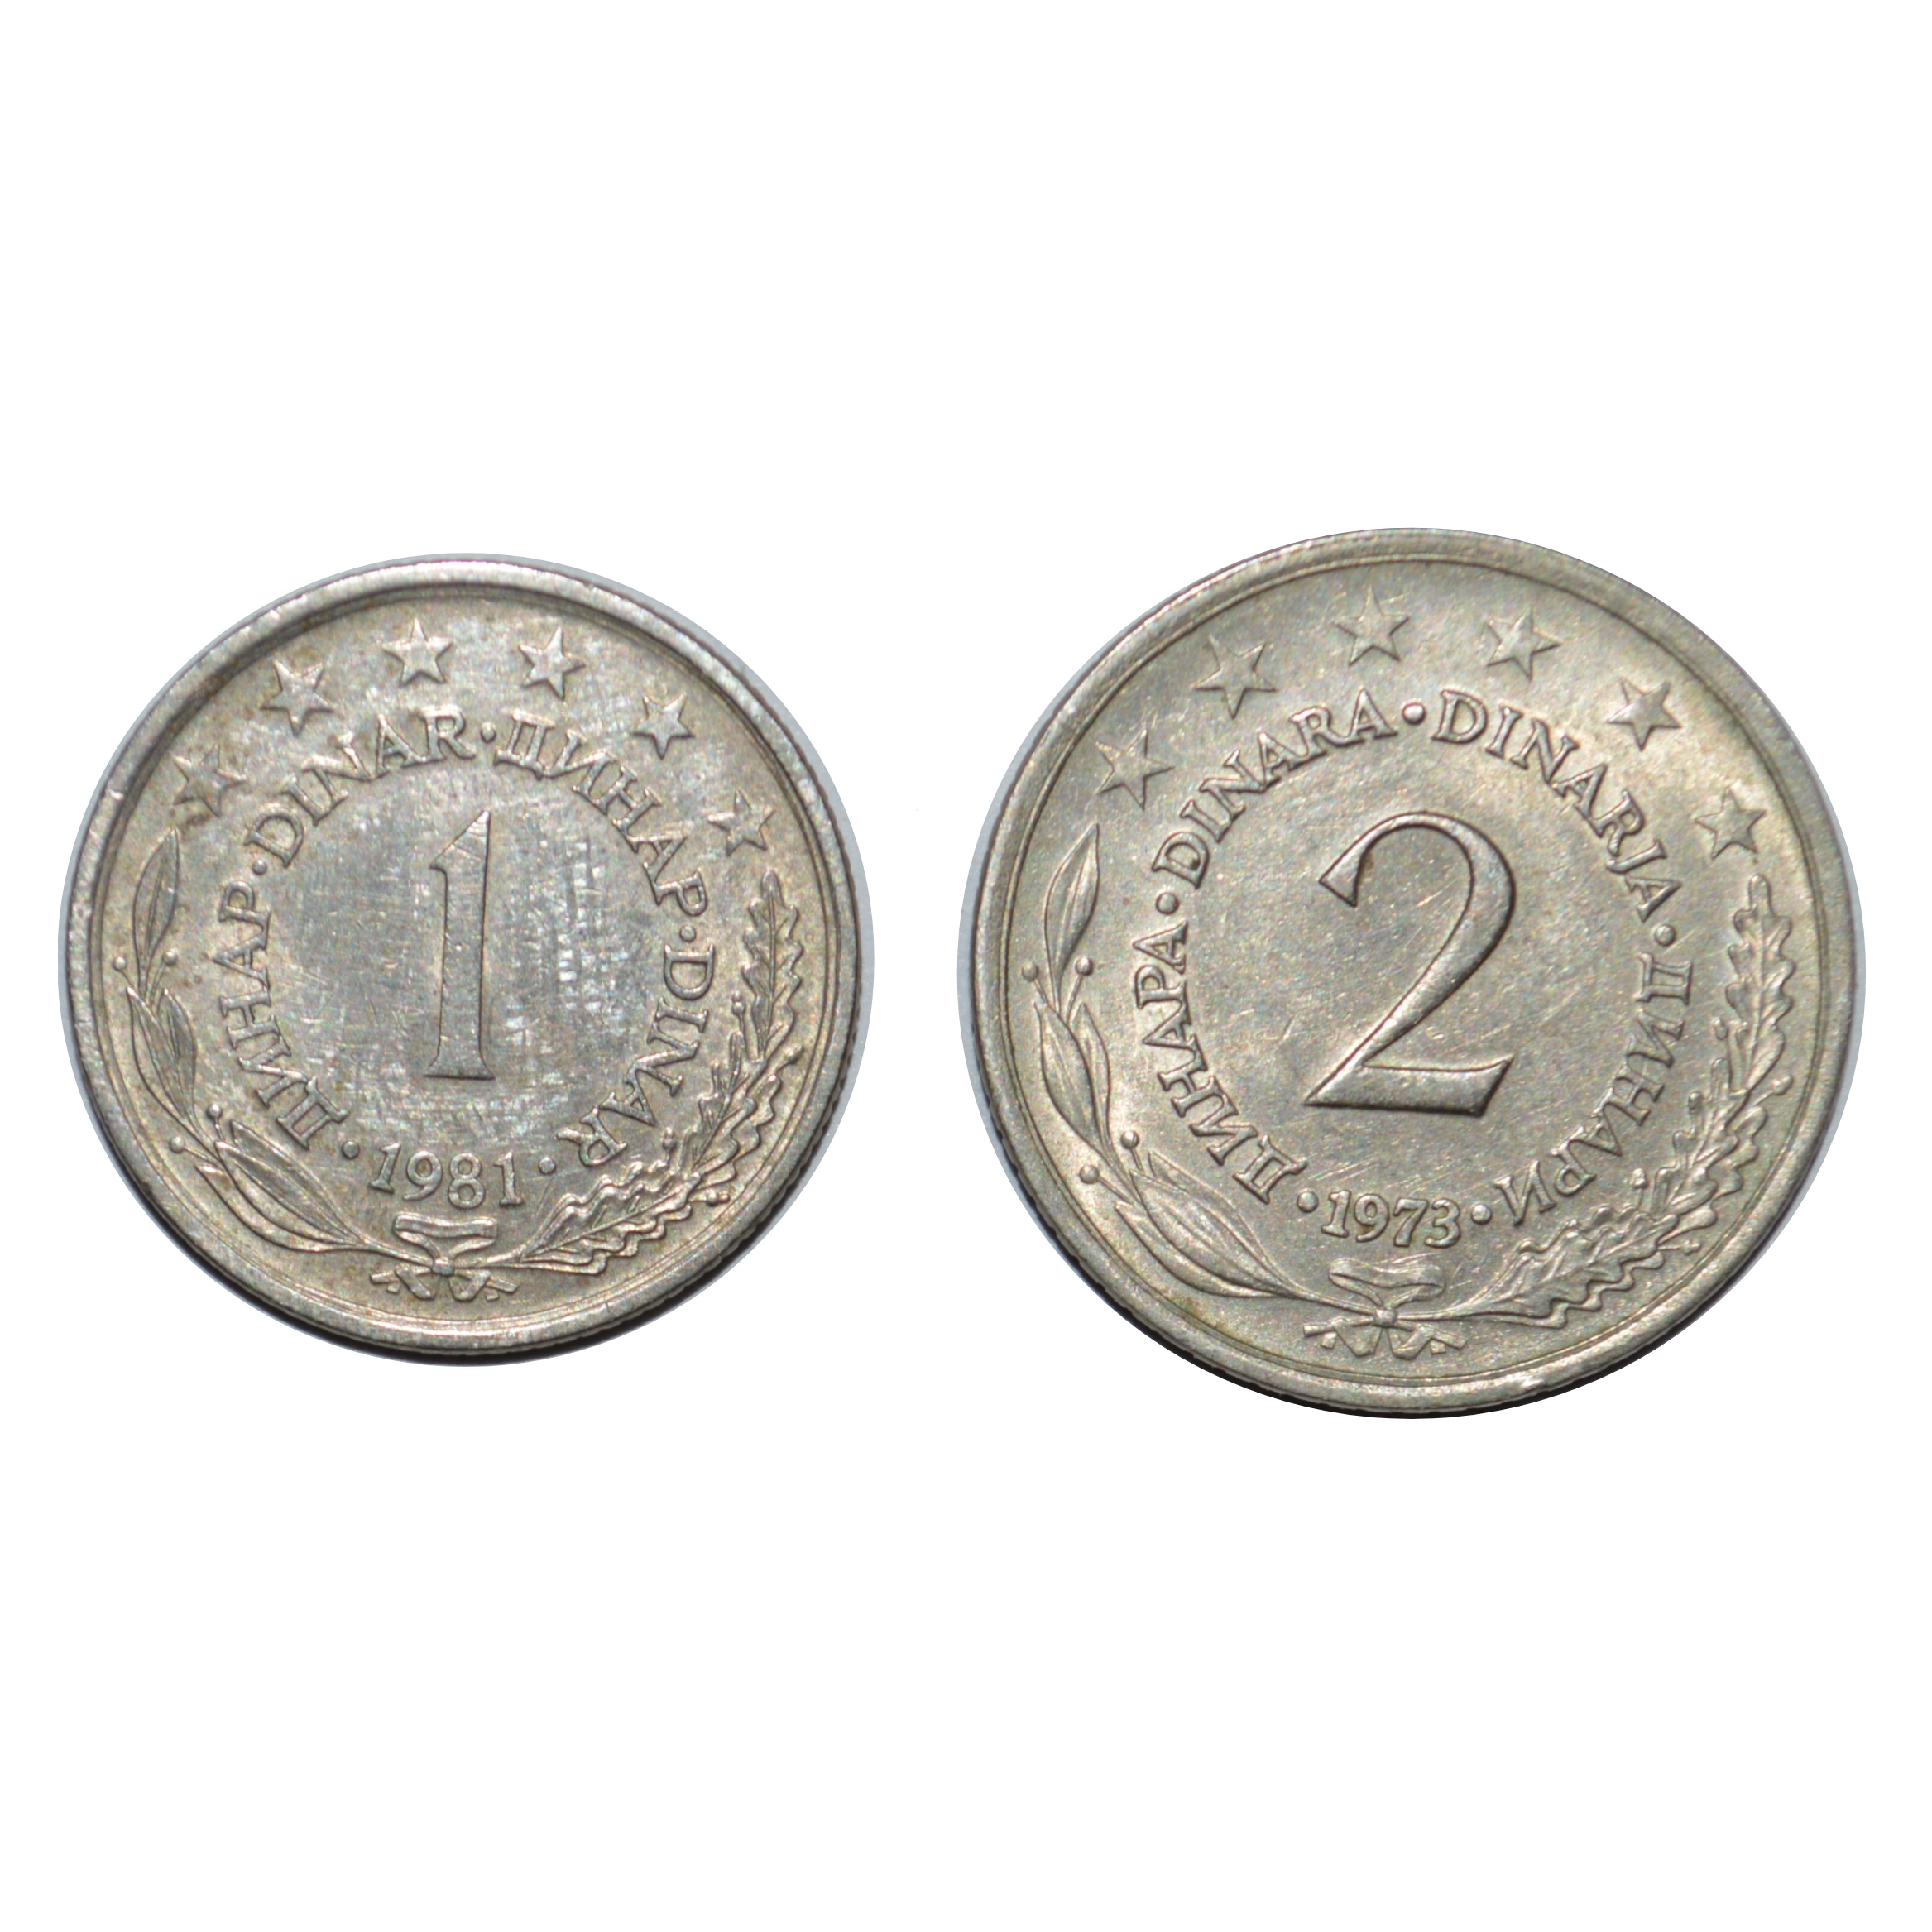 سکه تزیینی طرح کشور یوگسلاوی مدل یک و 2 دینار مجموعه 2 عددی 